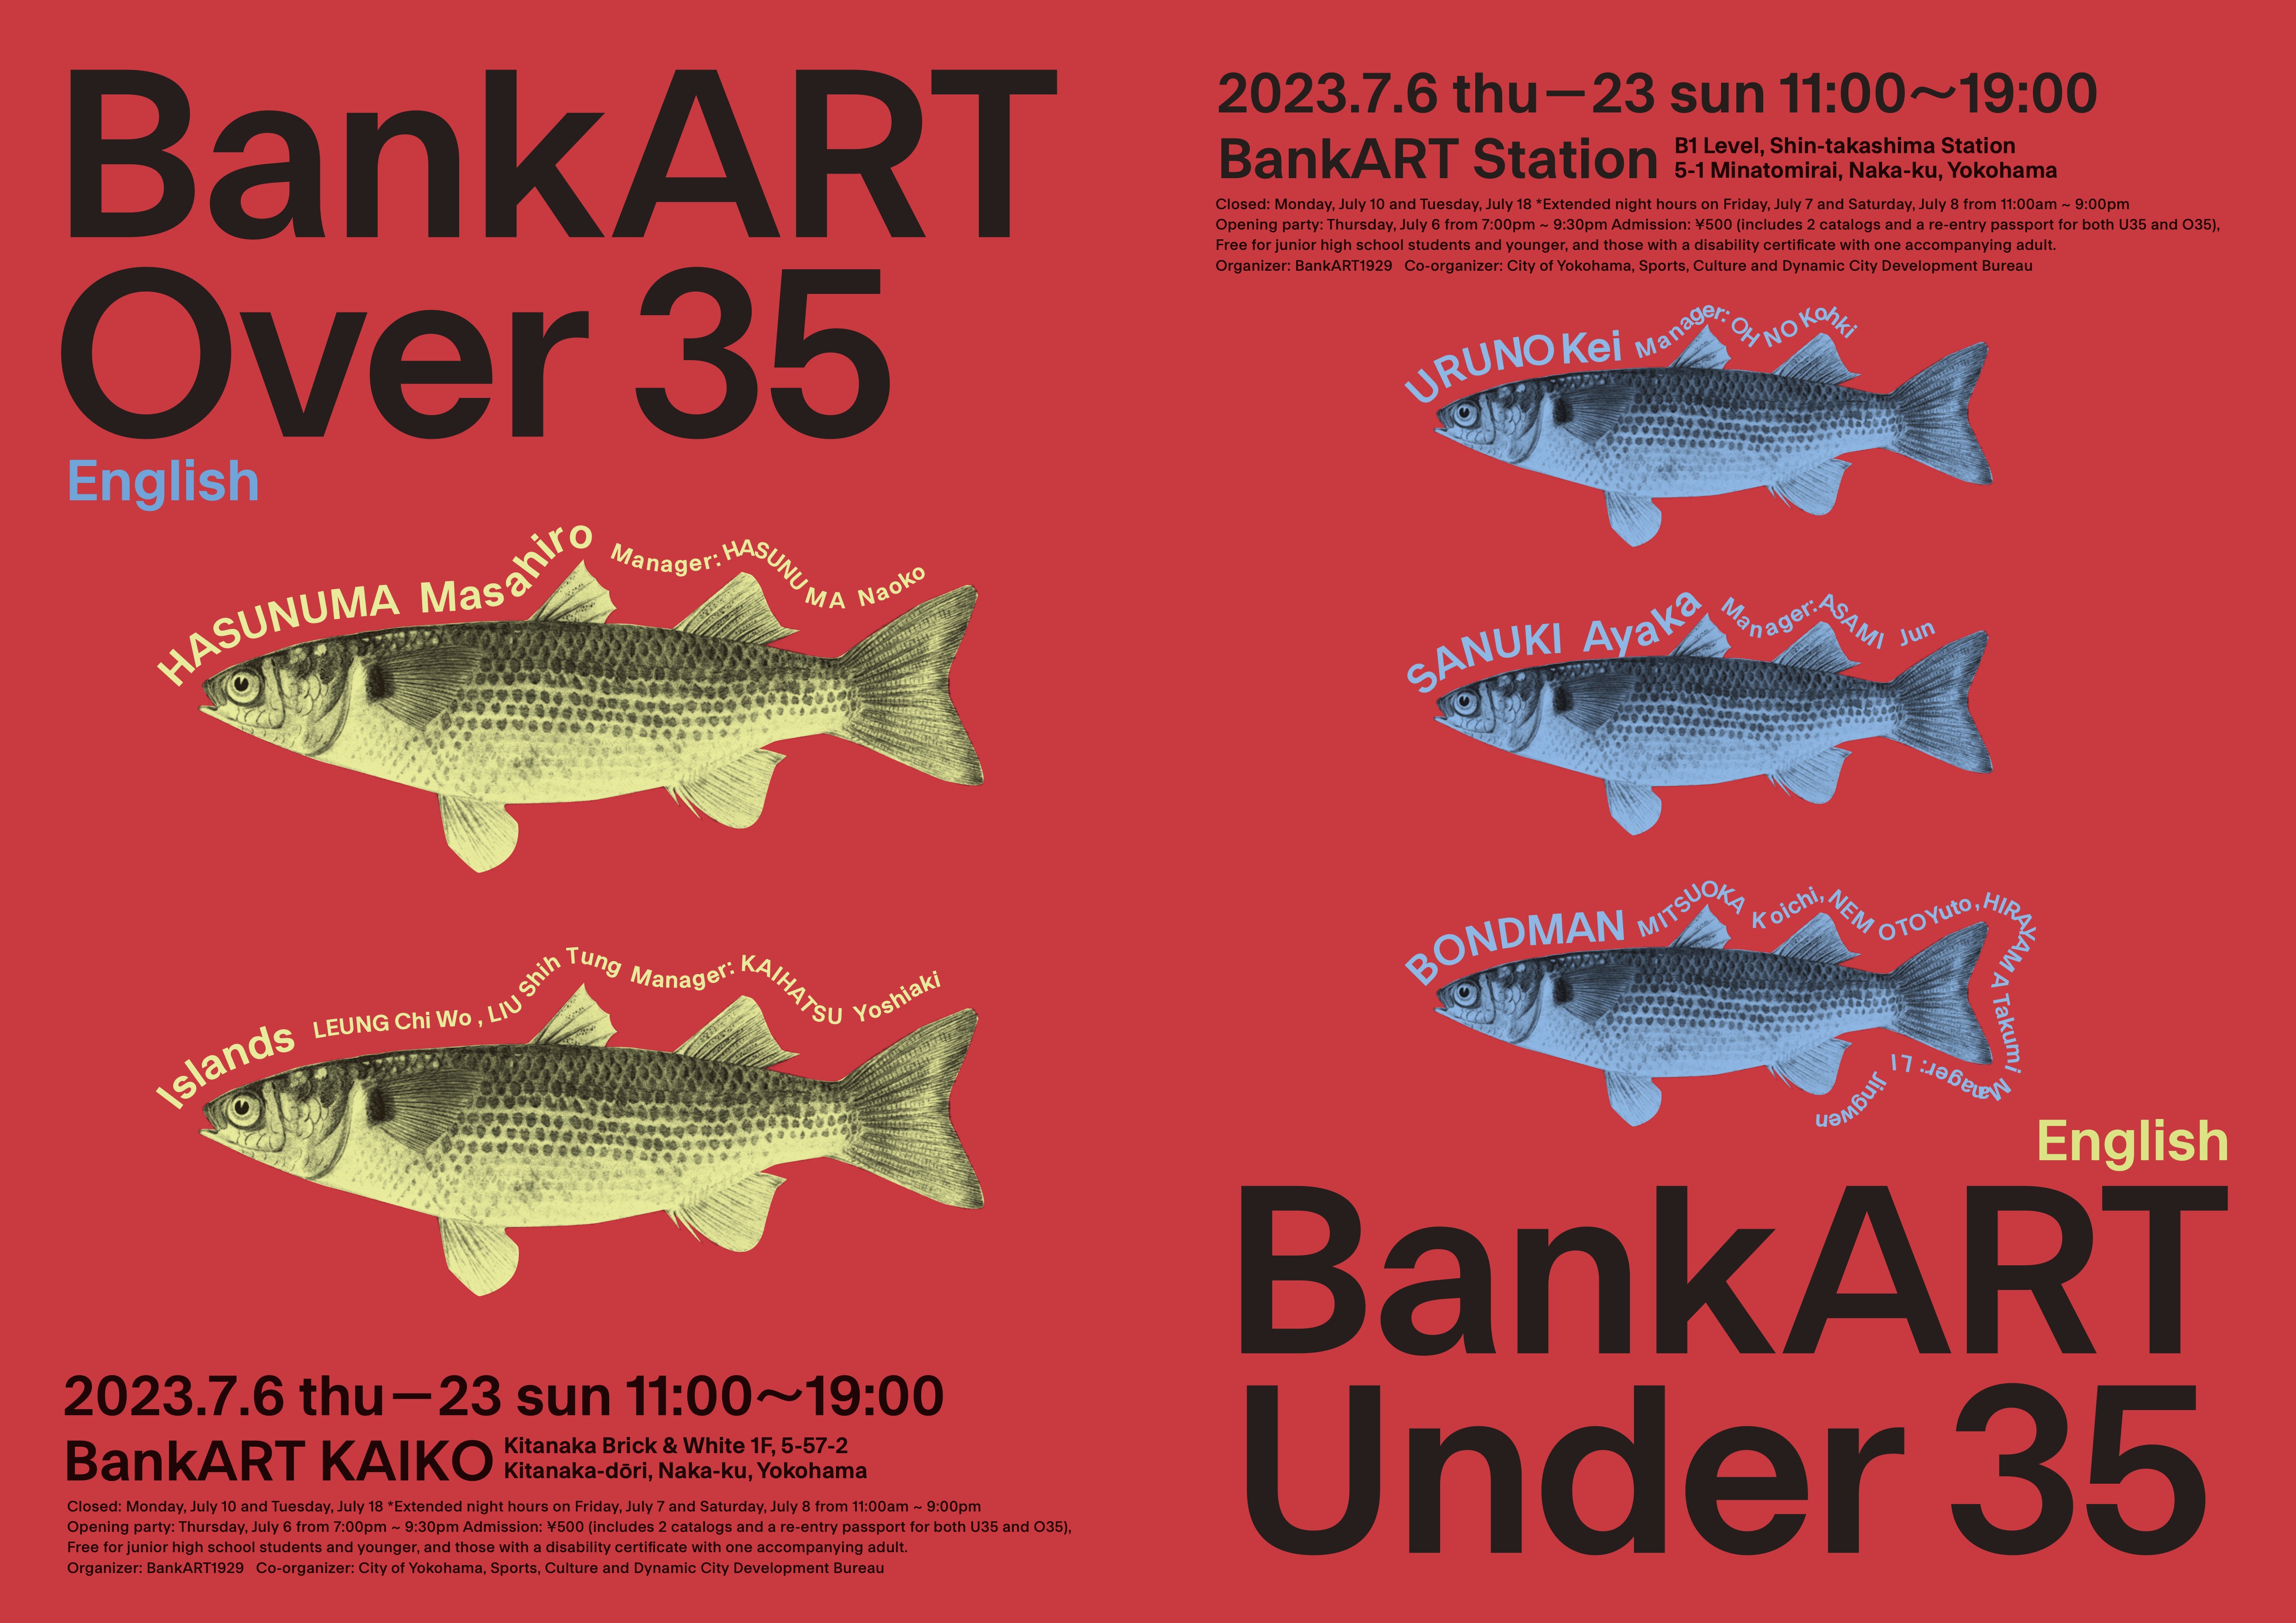 Leung Chi Wo Participates in “BankART Under 35 / Over 35” at BankART KAIKO, Japan